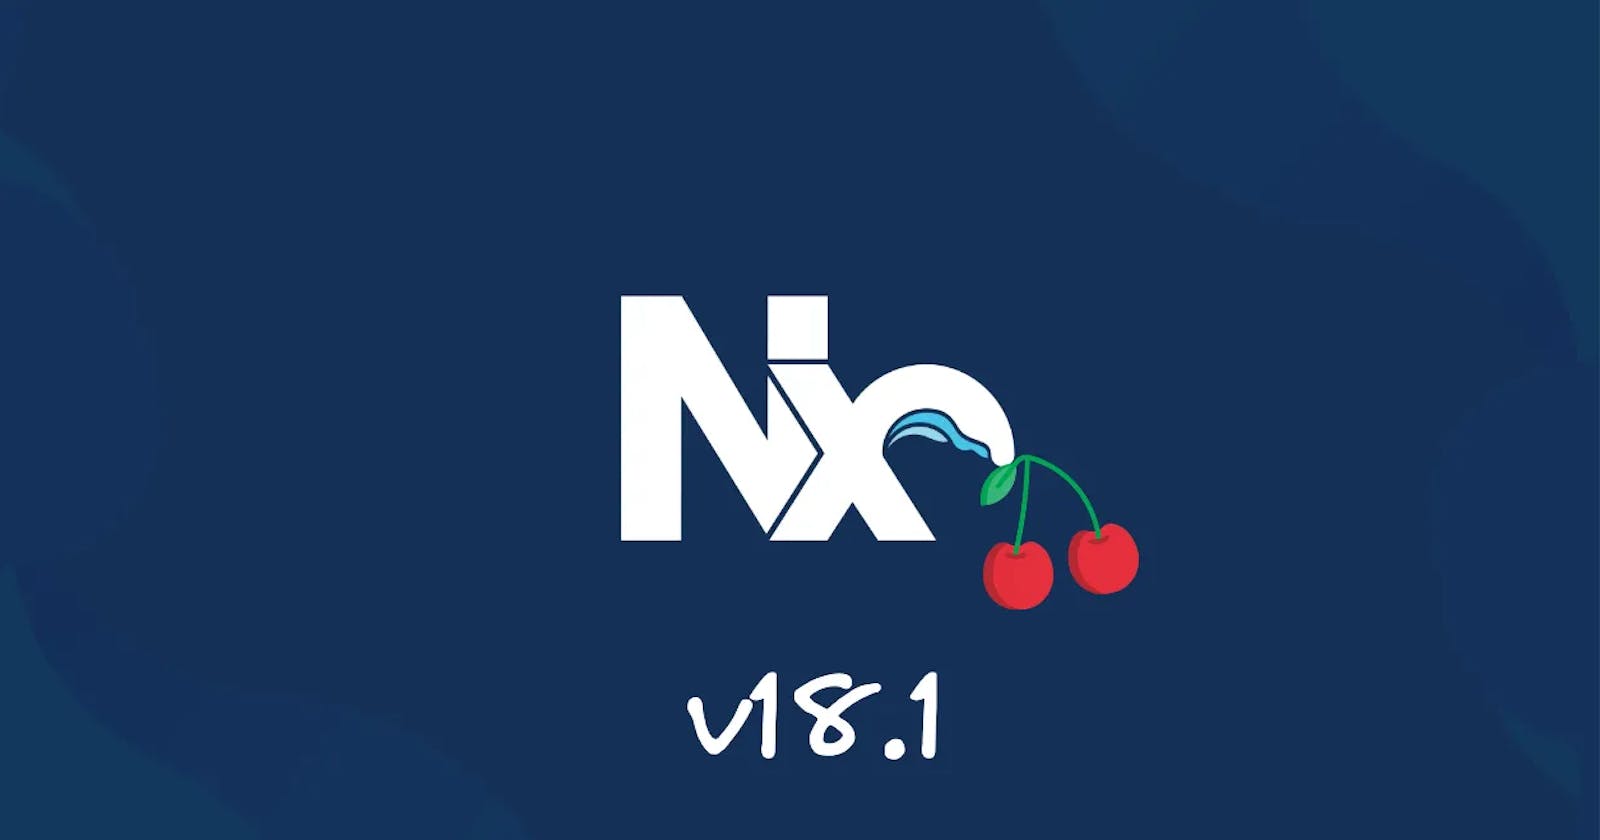 🍒 Cherry-Picked Nx v18.1 Updates